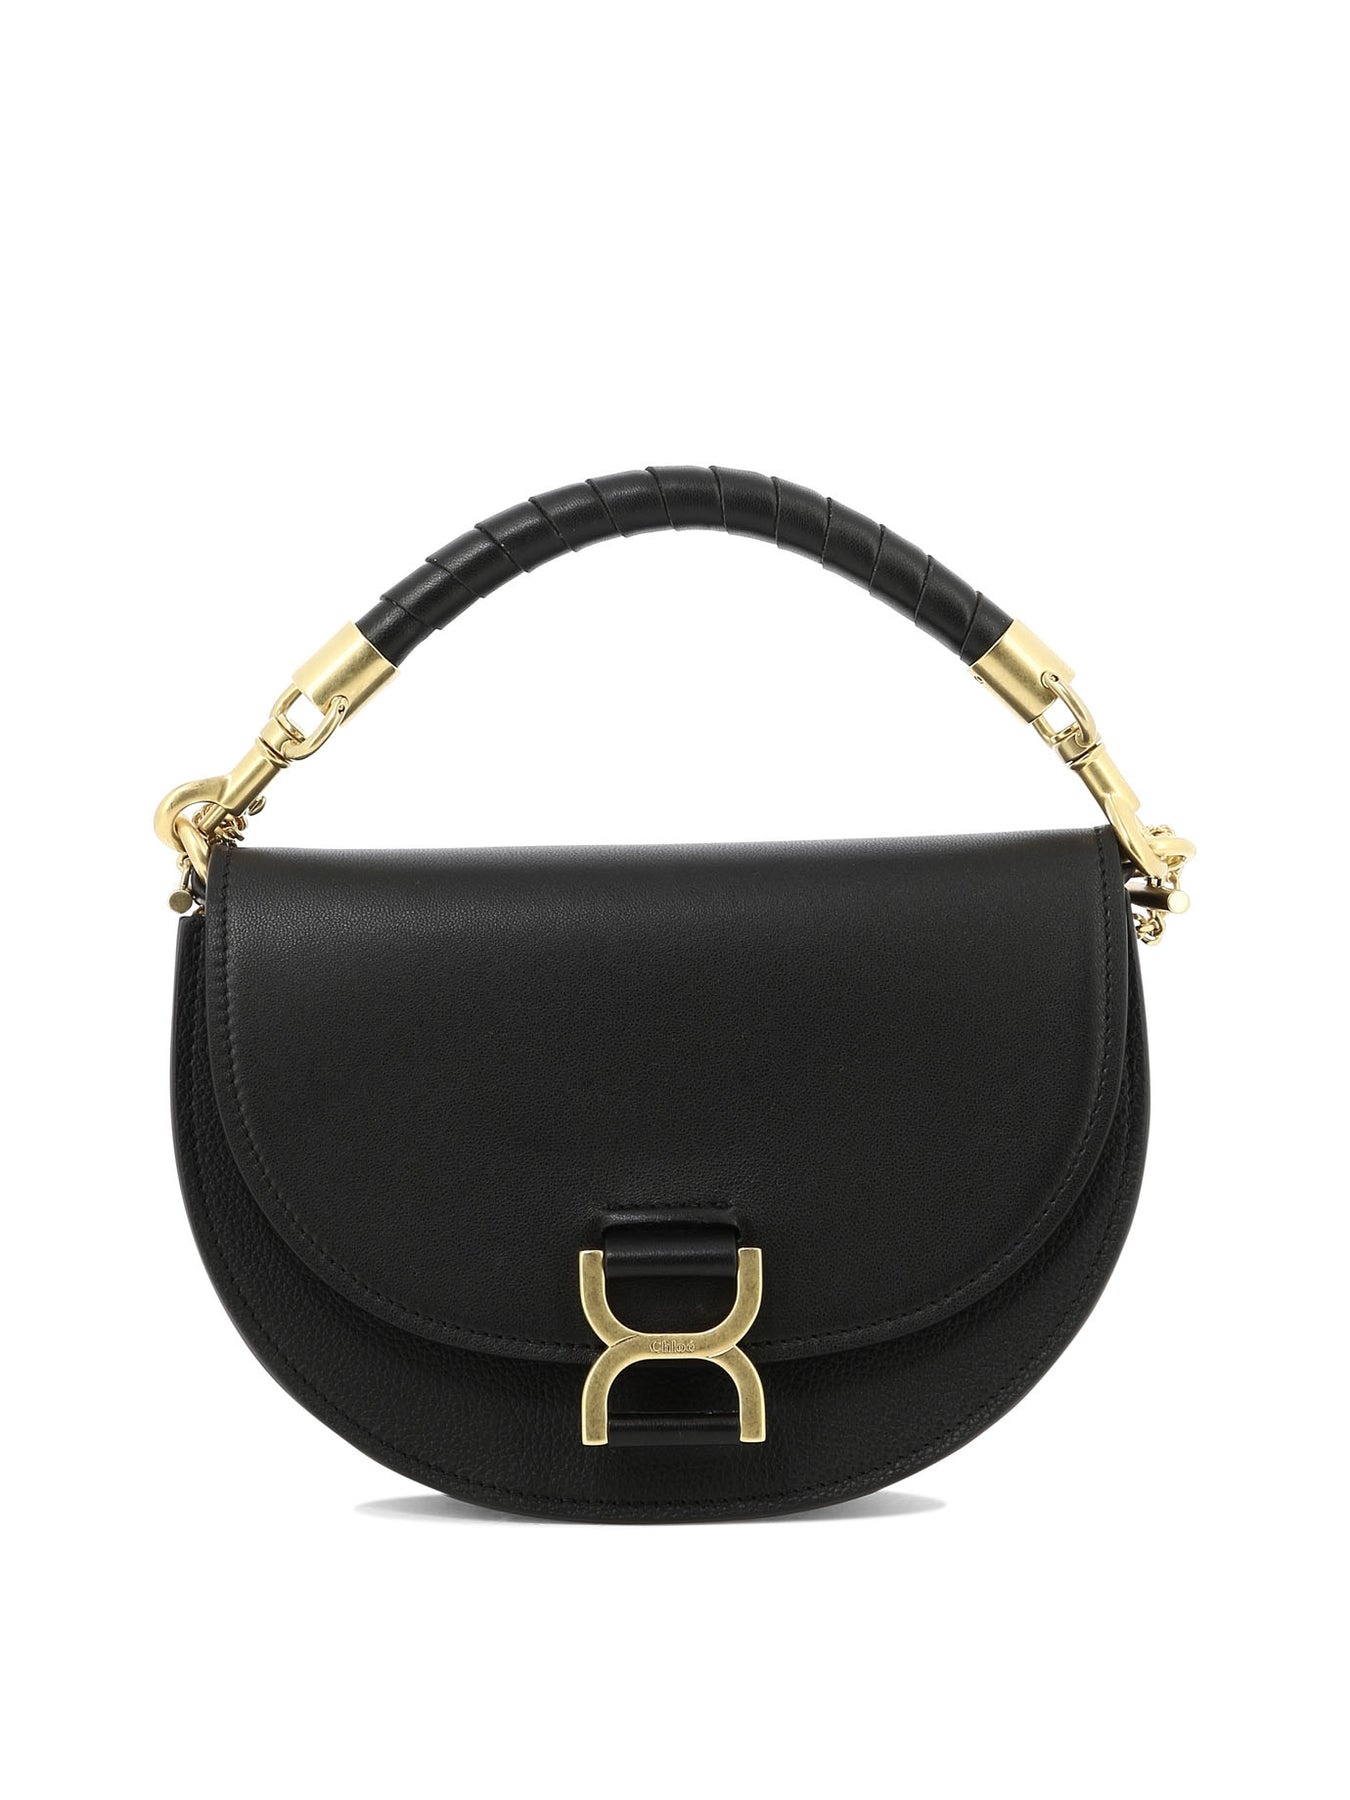 Marcie Handbags Black - 1